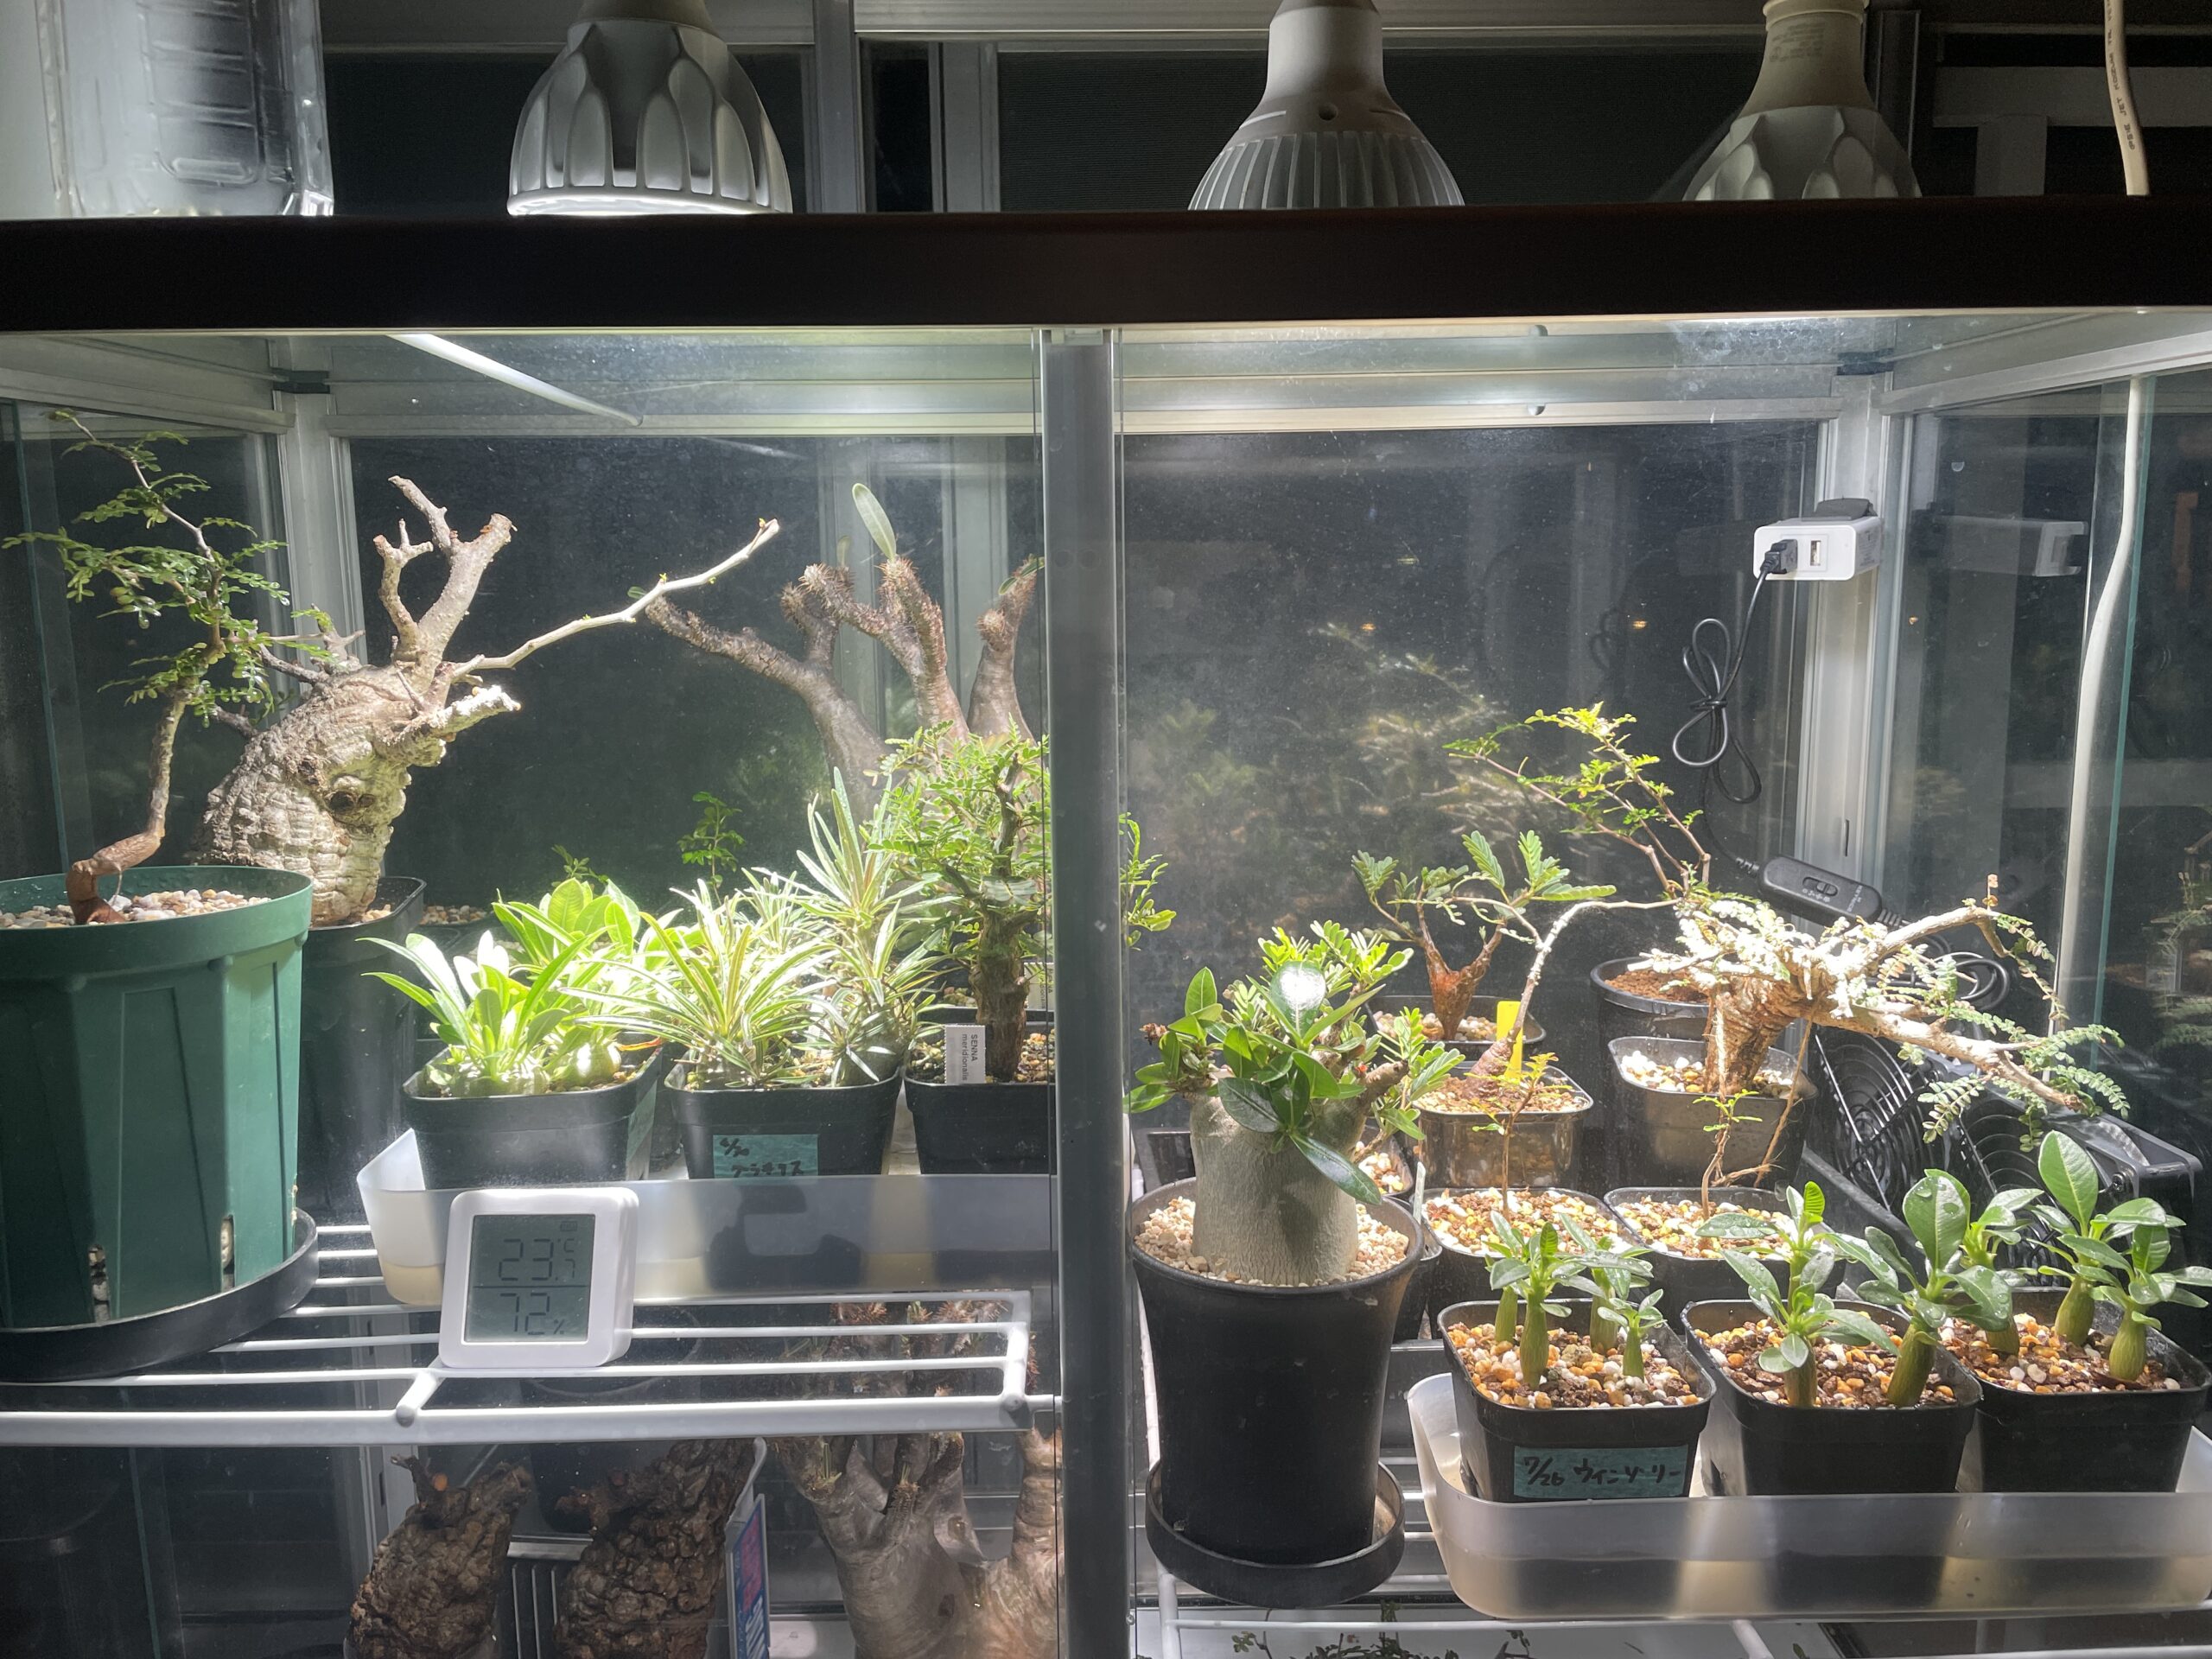 ピカコーポレーション FHBー1508BL ガラス温室植物 爬虫類 ペット 